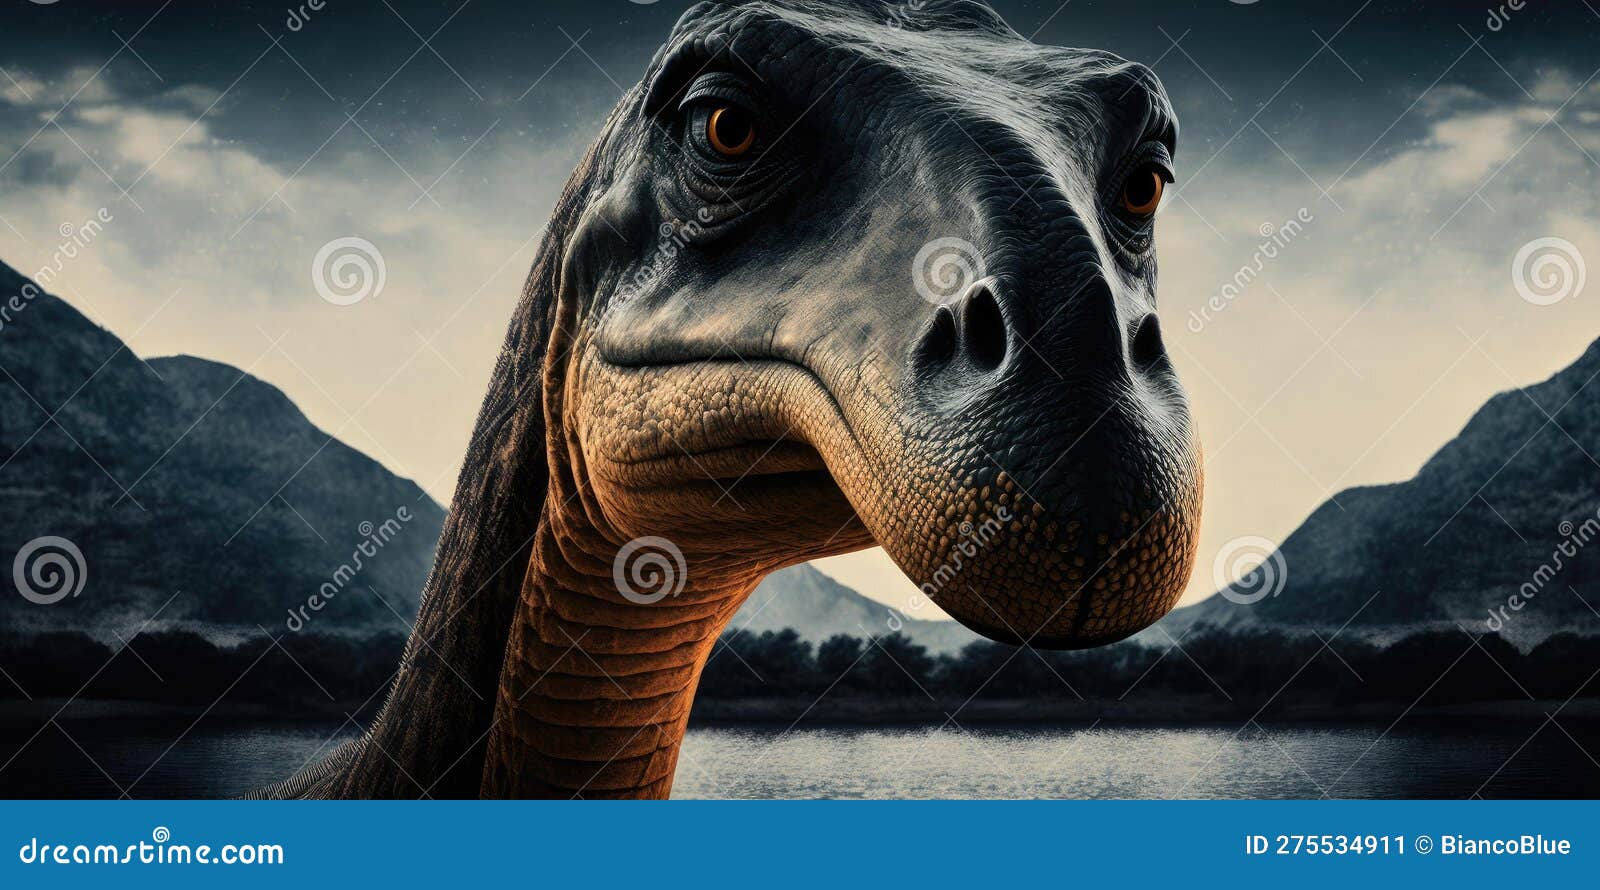 Criatura pré-histórica ou dinossauro na natureza selvagem desenho